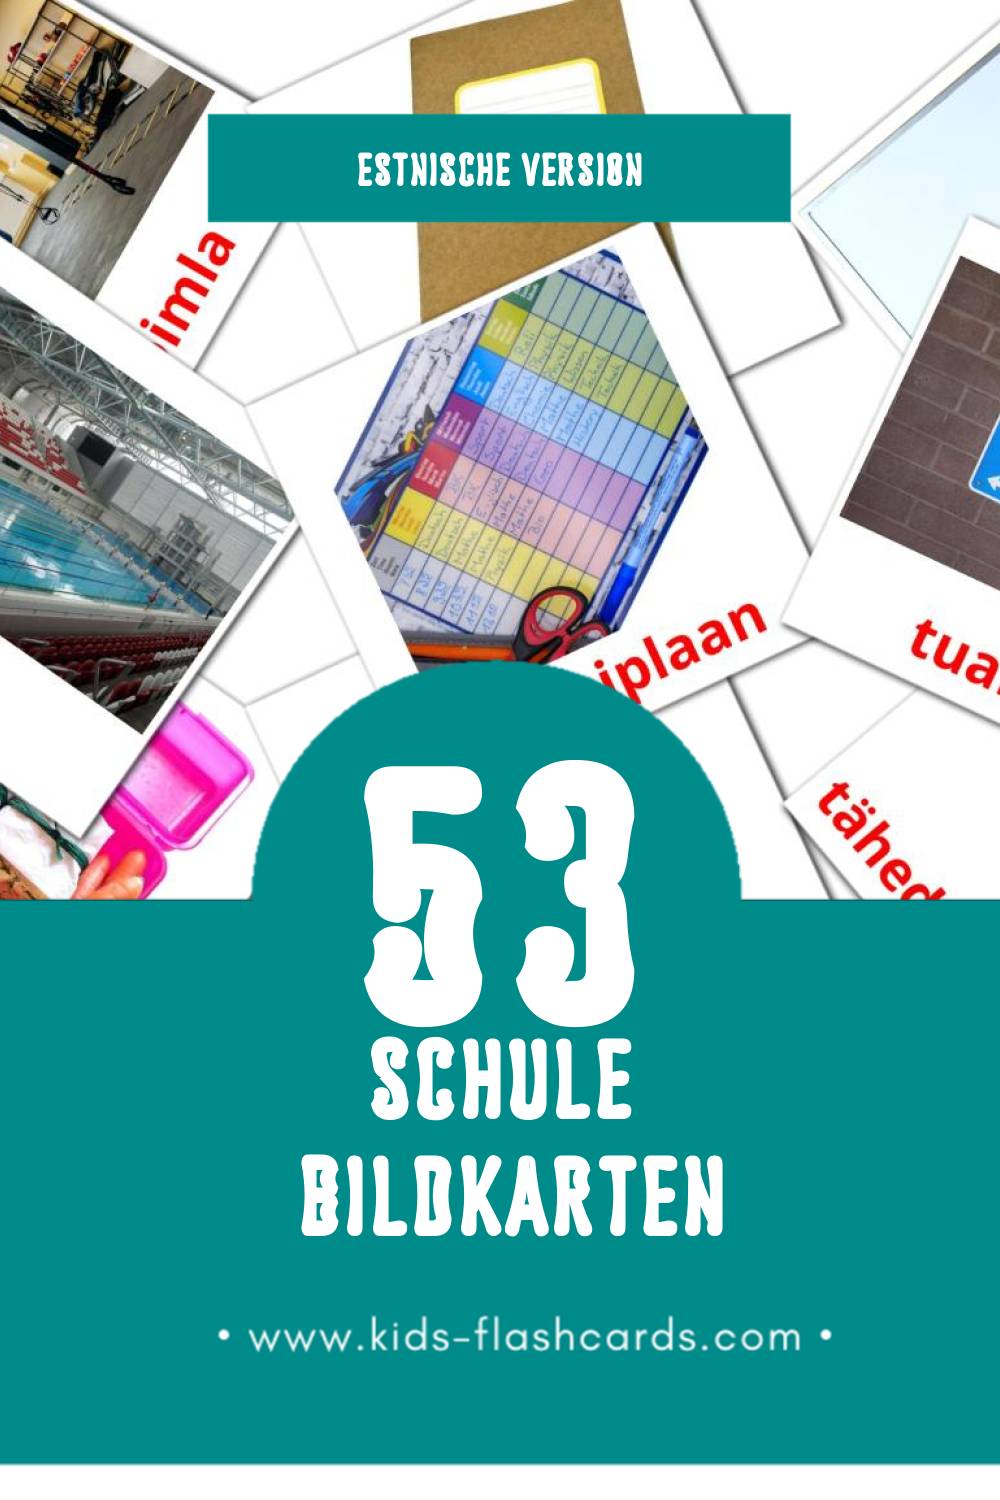 Visual Kool Flashcards für Kleinkinder (53 Karten in Estnisch)